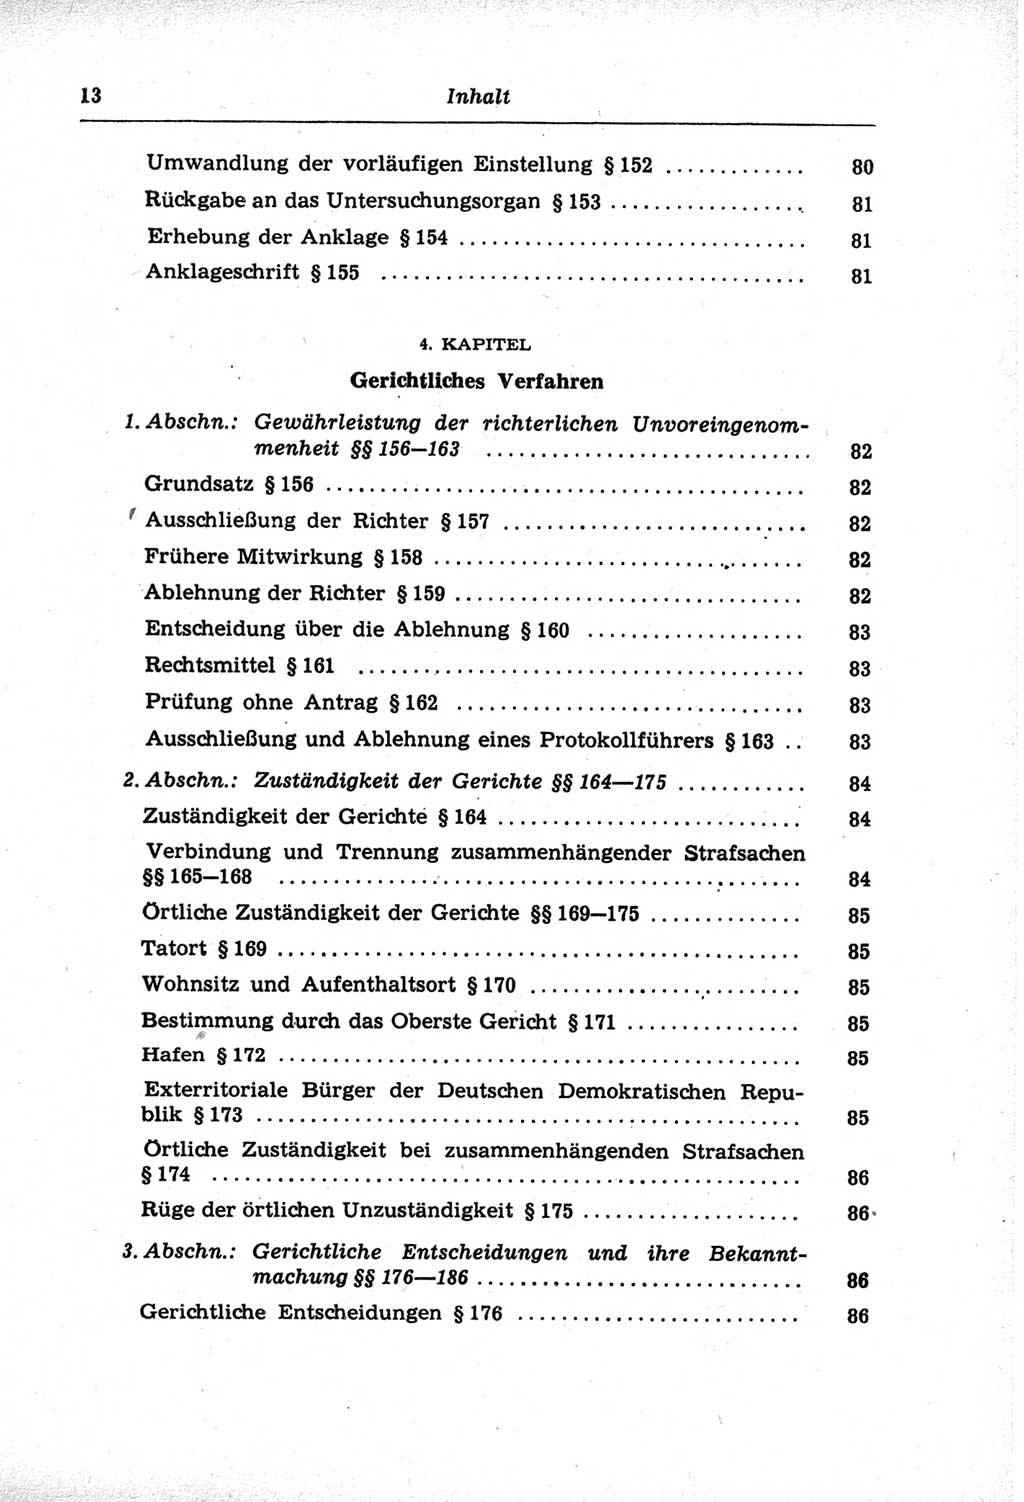 Strafprozeßordnung (StPO) der Deutschen Demokratischen Republik (DDR) und angrenzende Gesetze und Bestimmungen 1968, Seite 13 (StPO Ges. Bstgn. DDR 1968, S. 13)